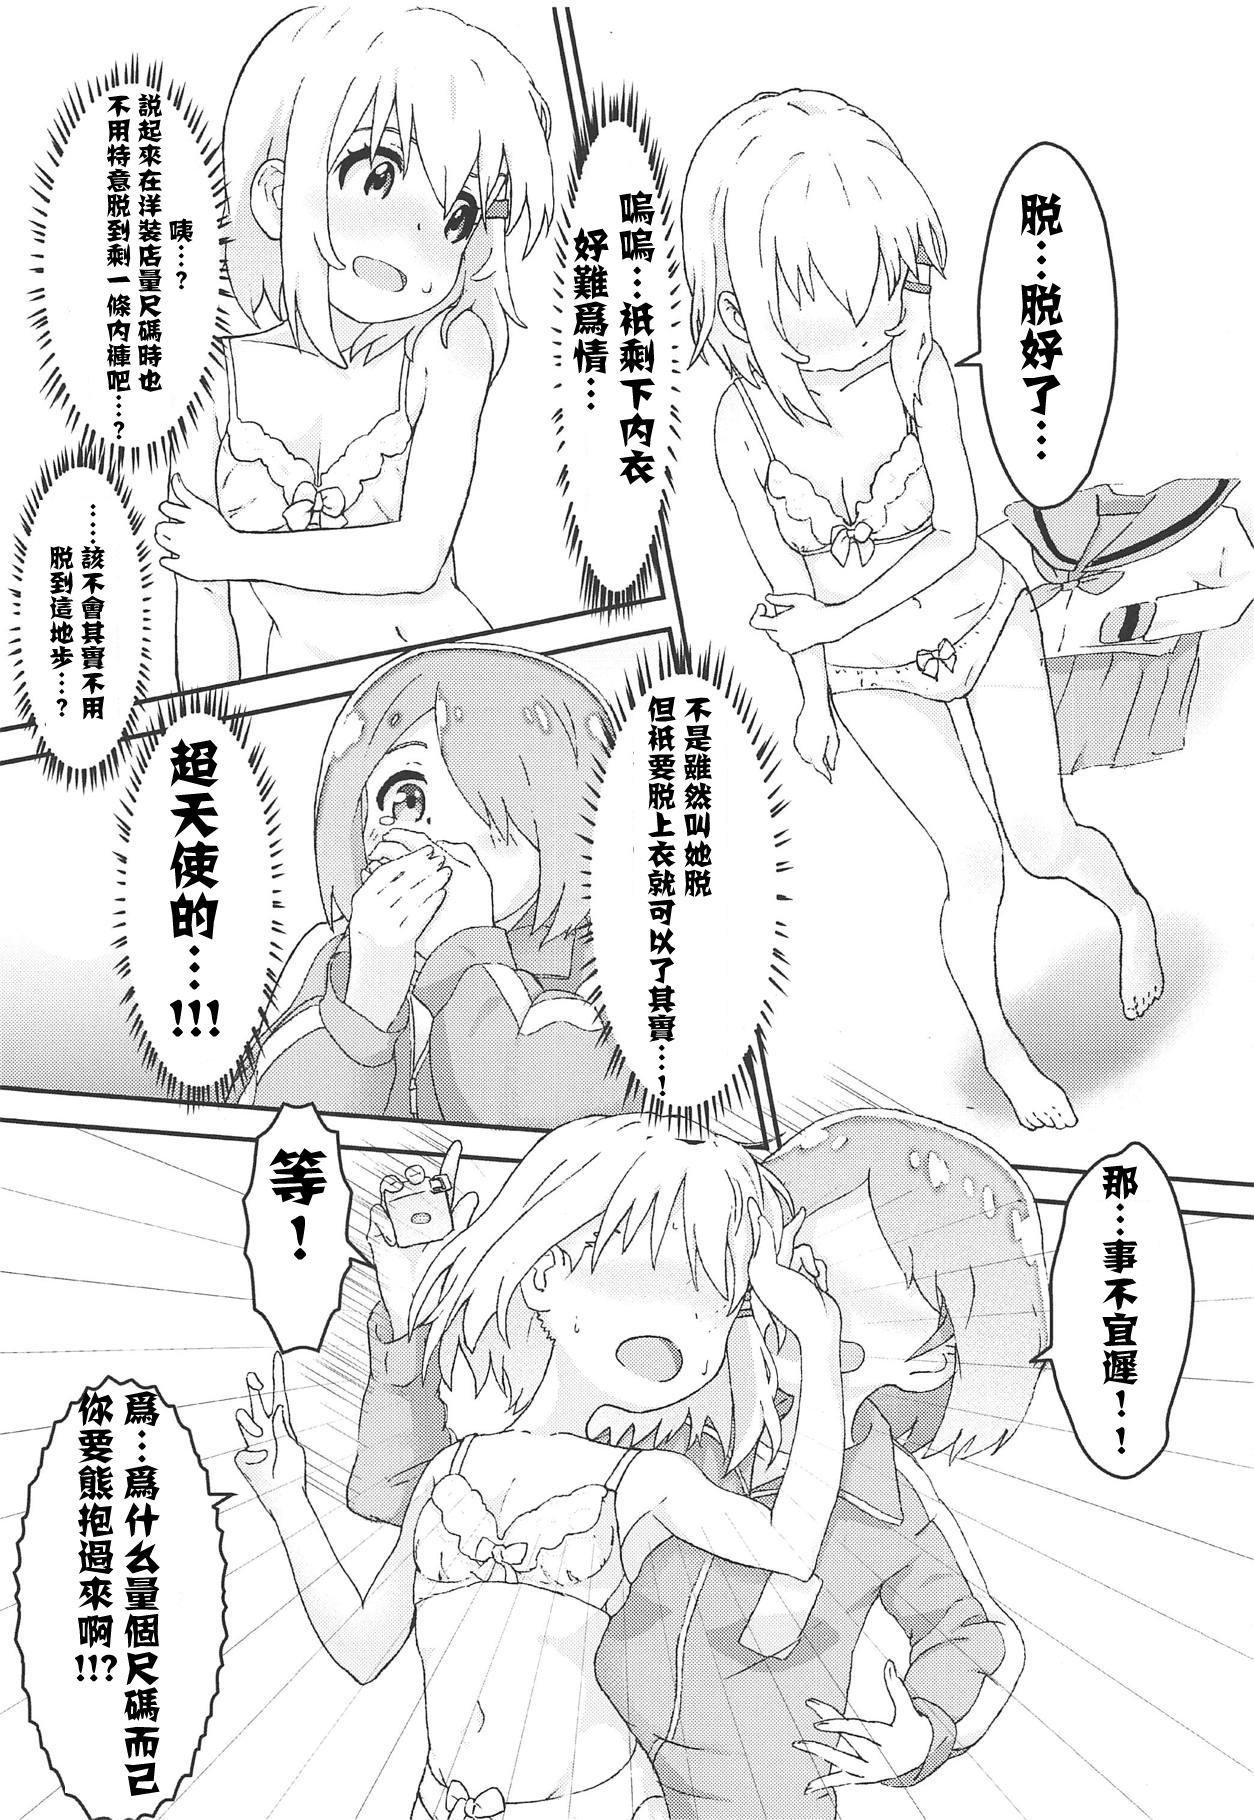 White Chick Watashi ni Yama Susume Shoujo ga Maiorita! - Watashi ni tenshi ga maiorita Yama no susume Pussy Licking - Page 7